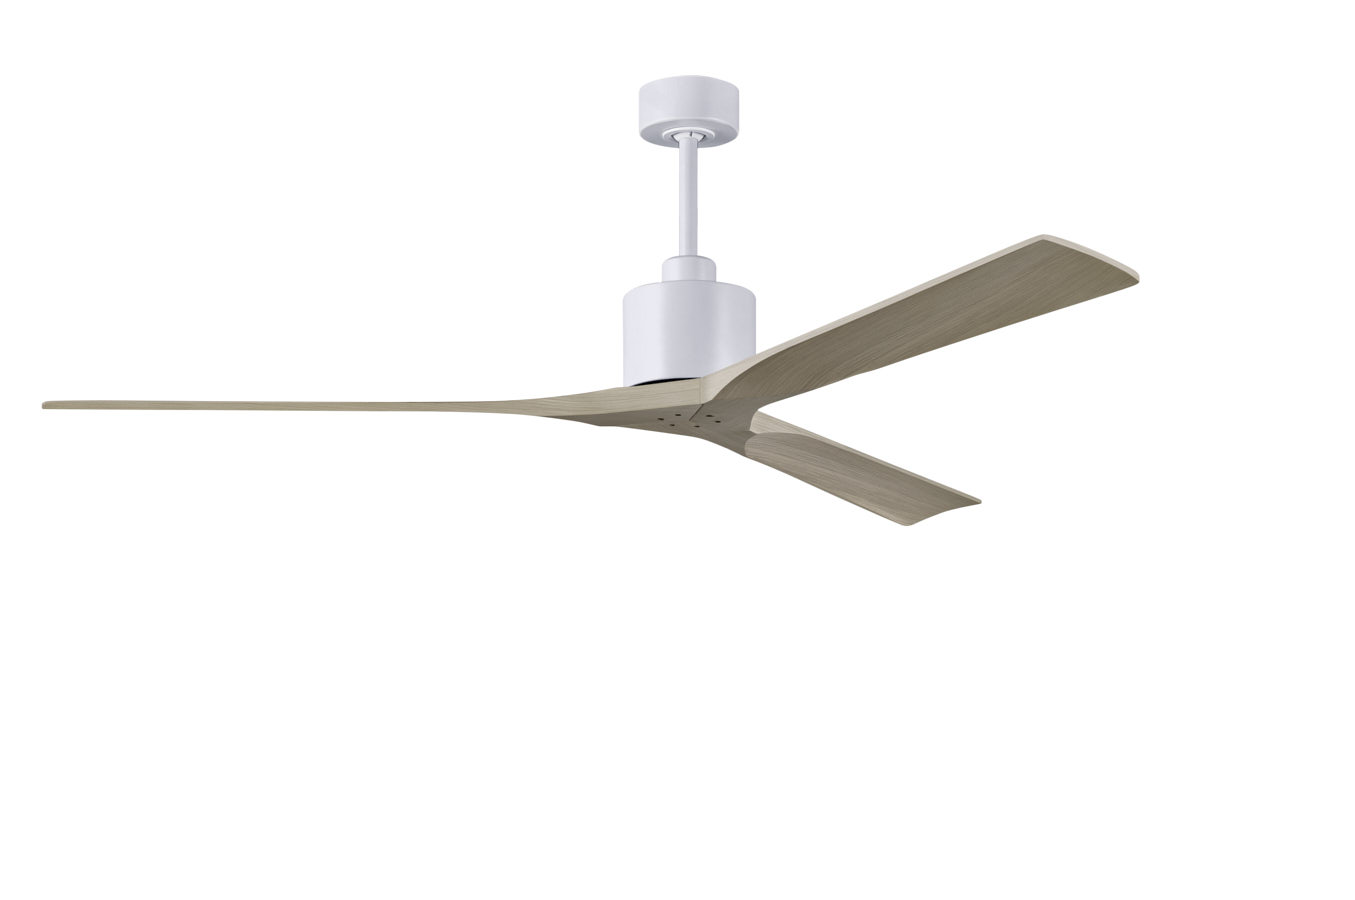 Nan XL ceiling fan in Matte White with 72” Gray Ash blades